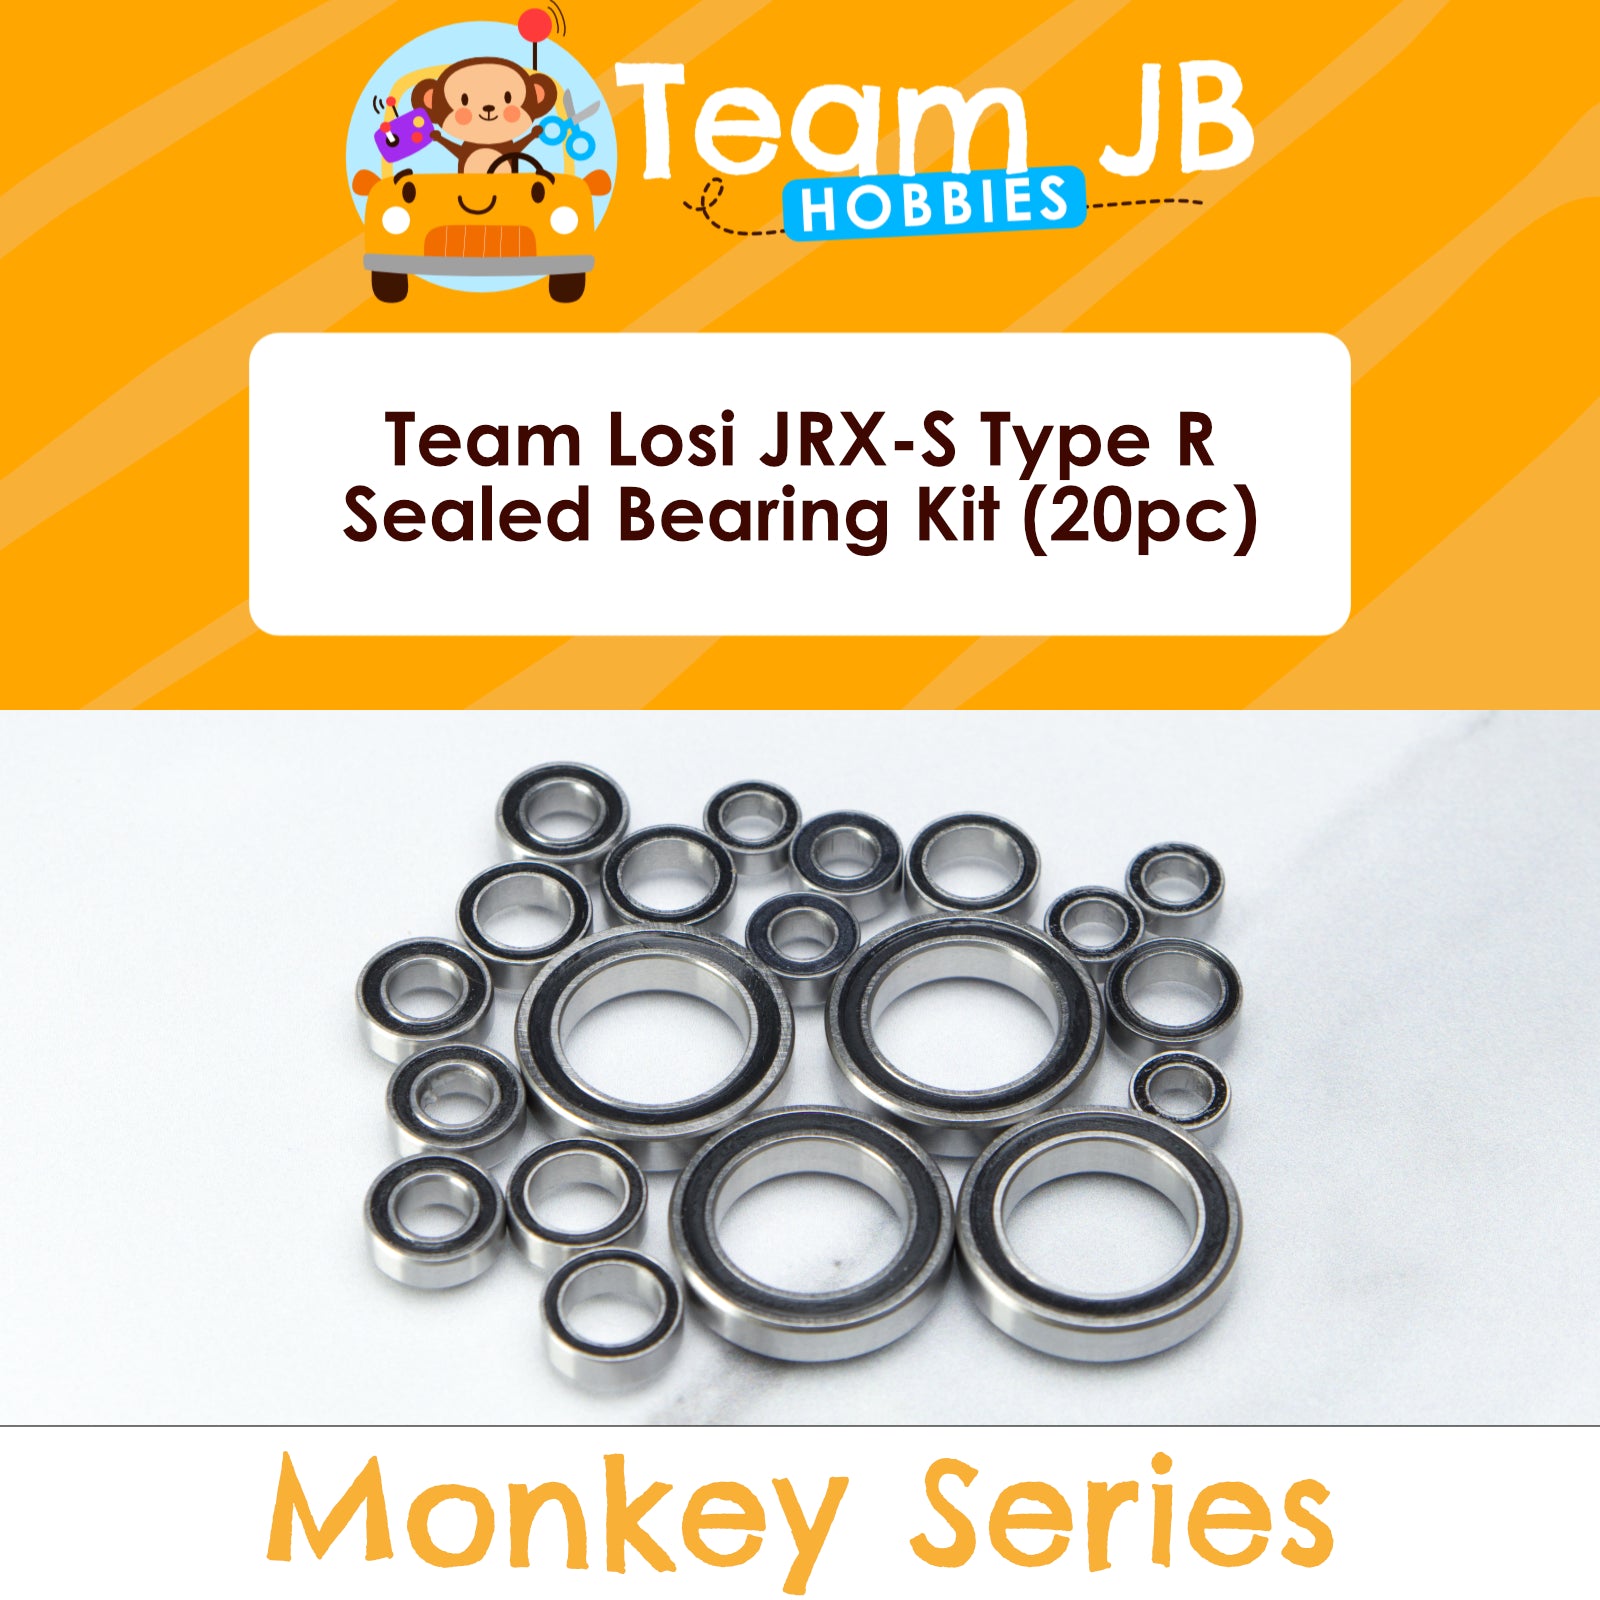 Team Losi JRX-S Type R - Sealed Bearing Kit